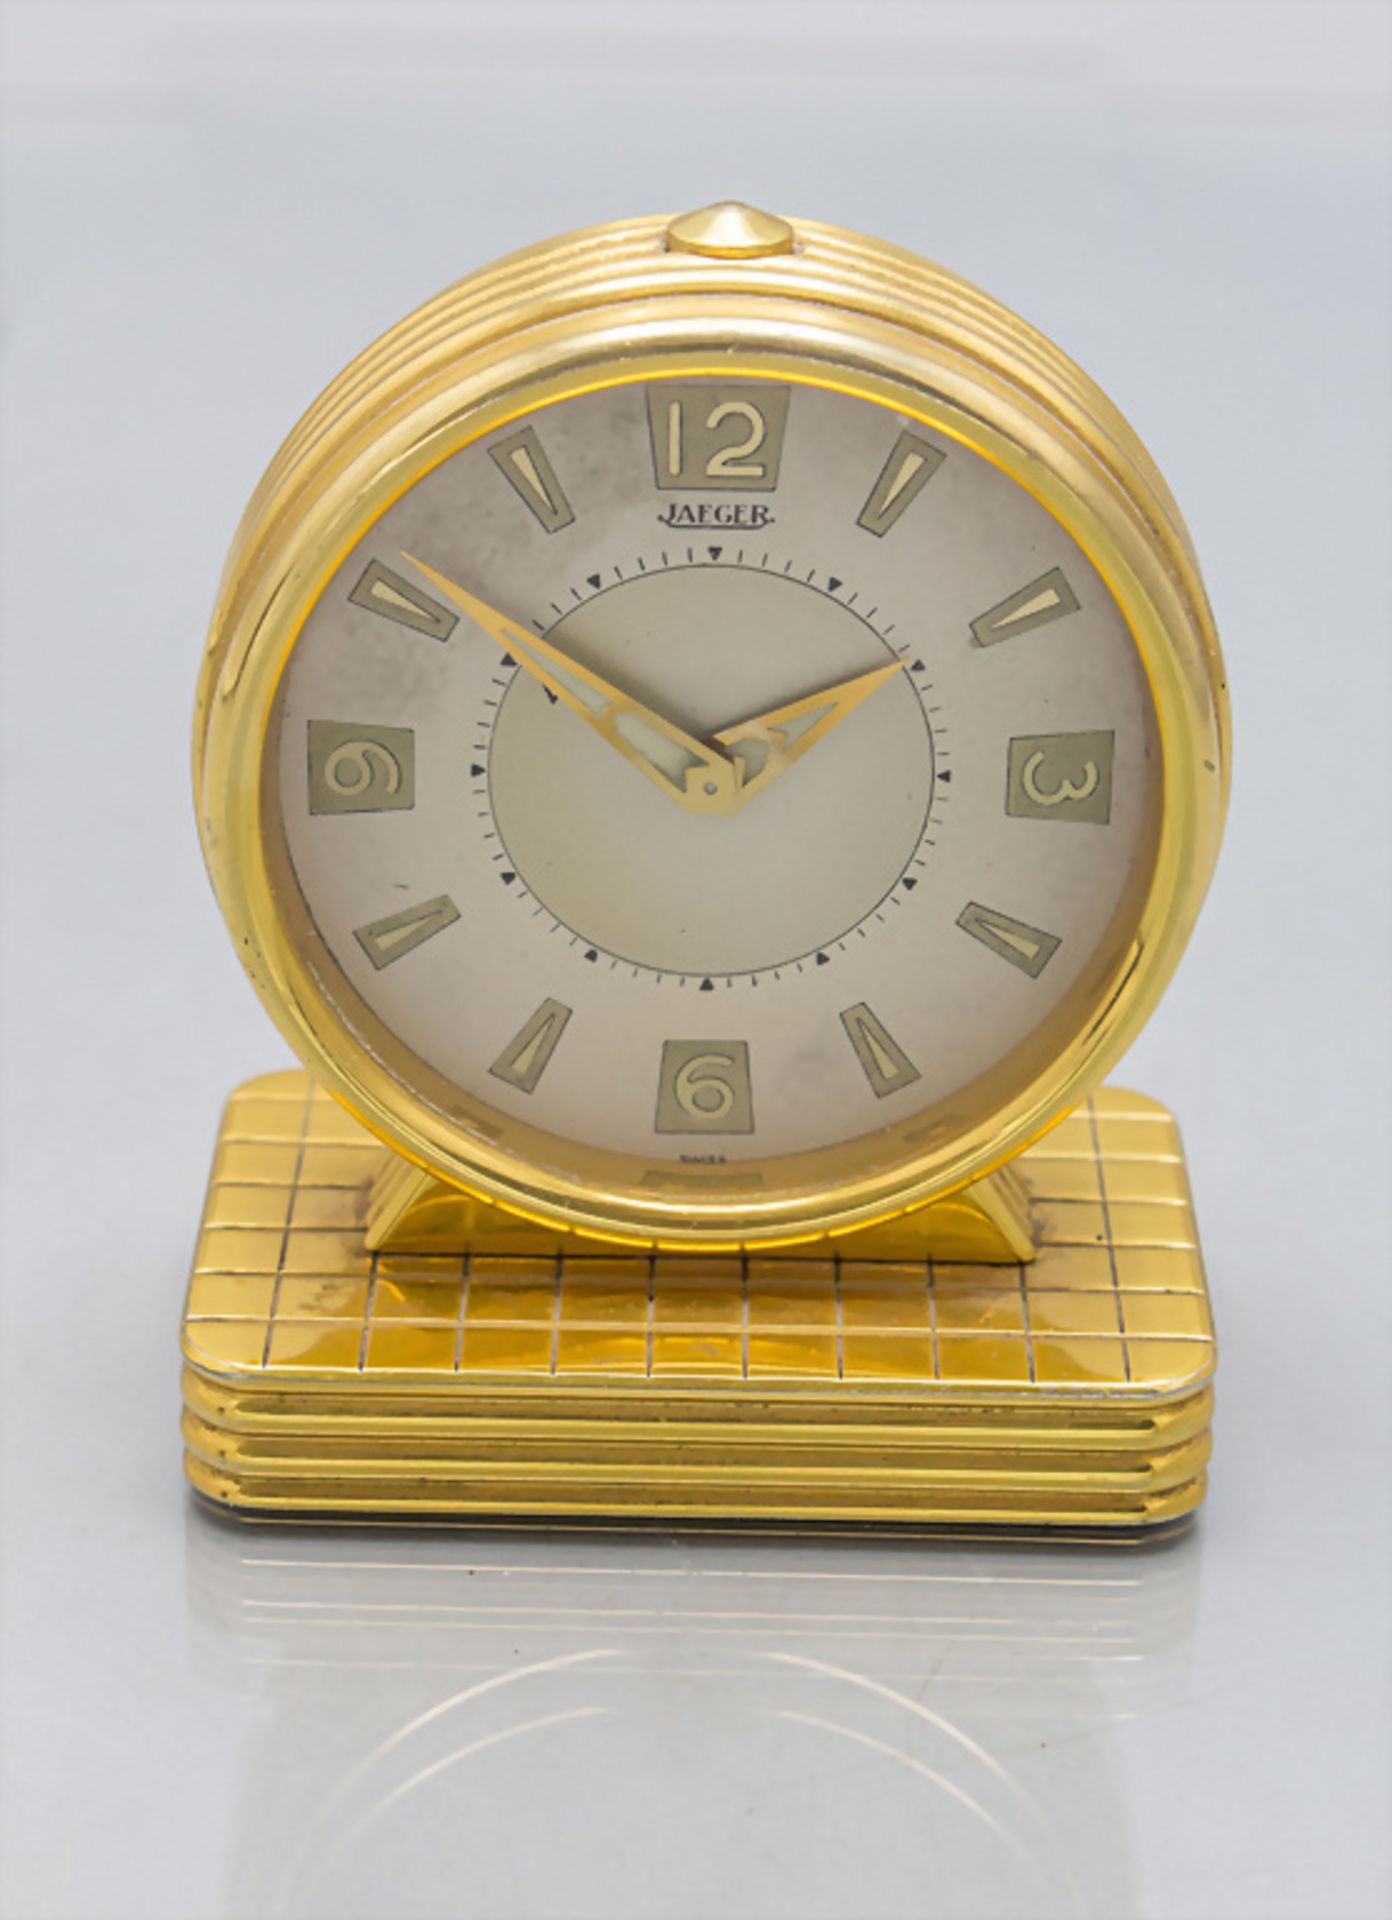 Tischuhr mit Wecker / An alarm clock, Jaeger, Swiss/Schweiz